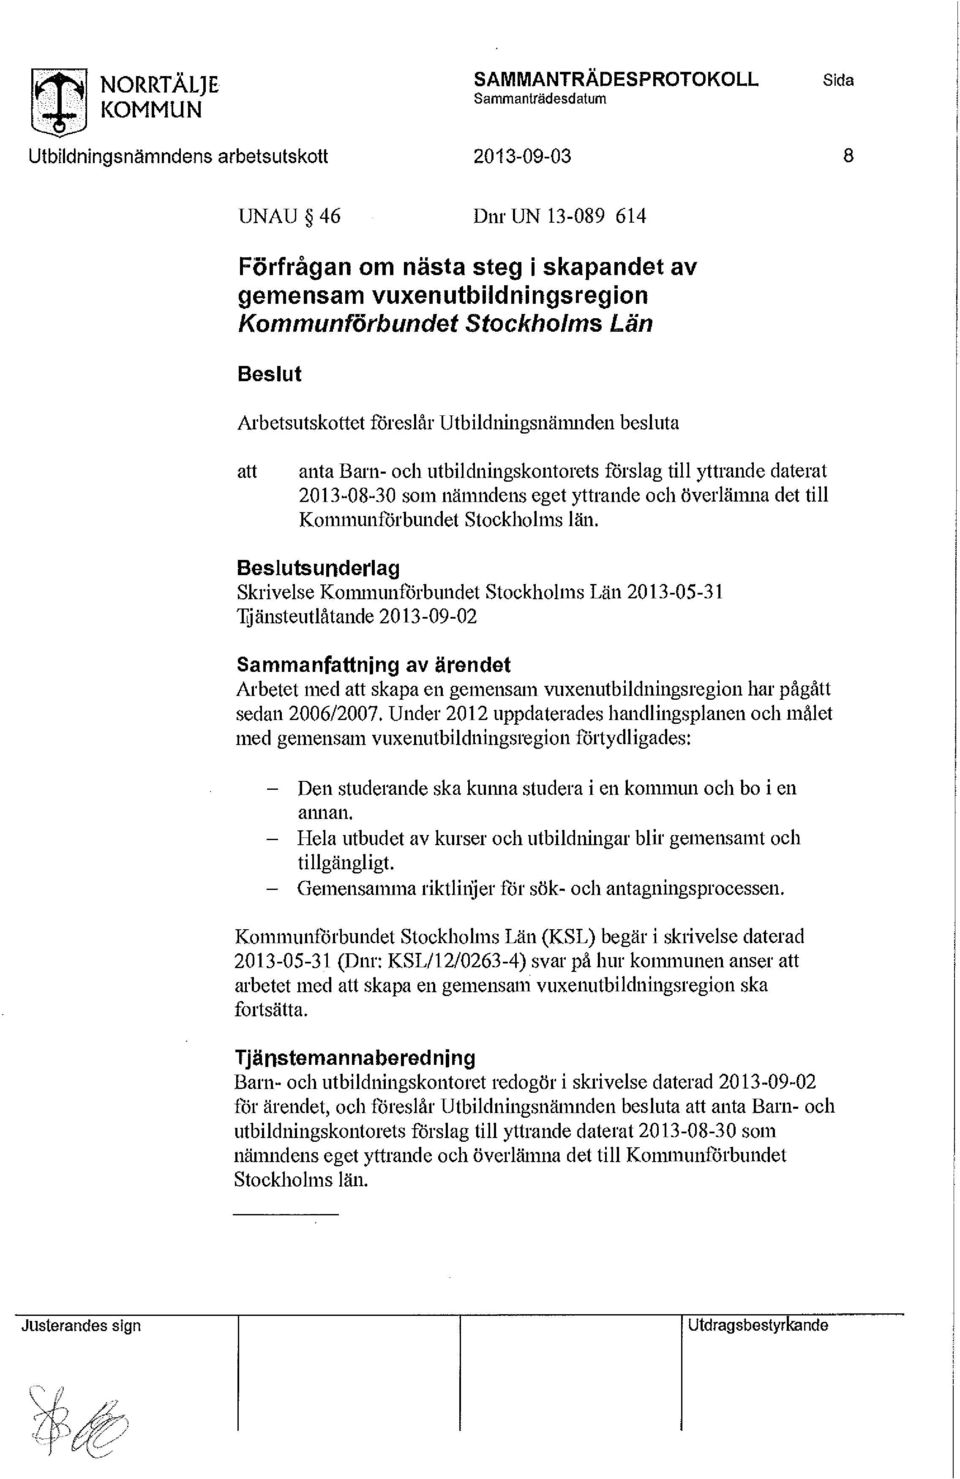 sunderlag Skrivelse Kommunförbundet Stockholms Län 2013-05-31 Tjänsteutlåtande 2013-09-02 Sammanfning av ärendet Arbetet med skapa en gemensam vuxenutbildningsregion har pågått sedan 2006/2007.